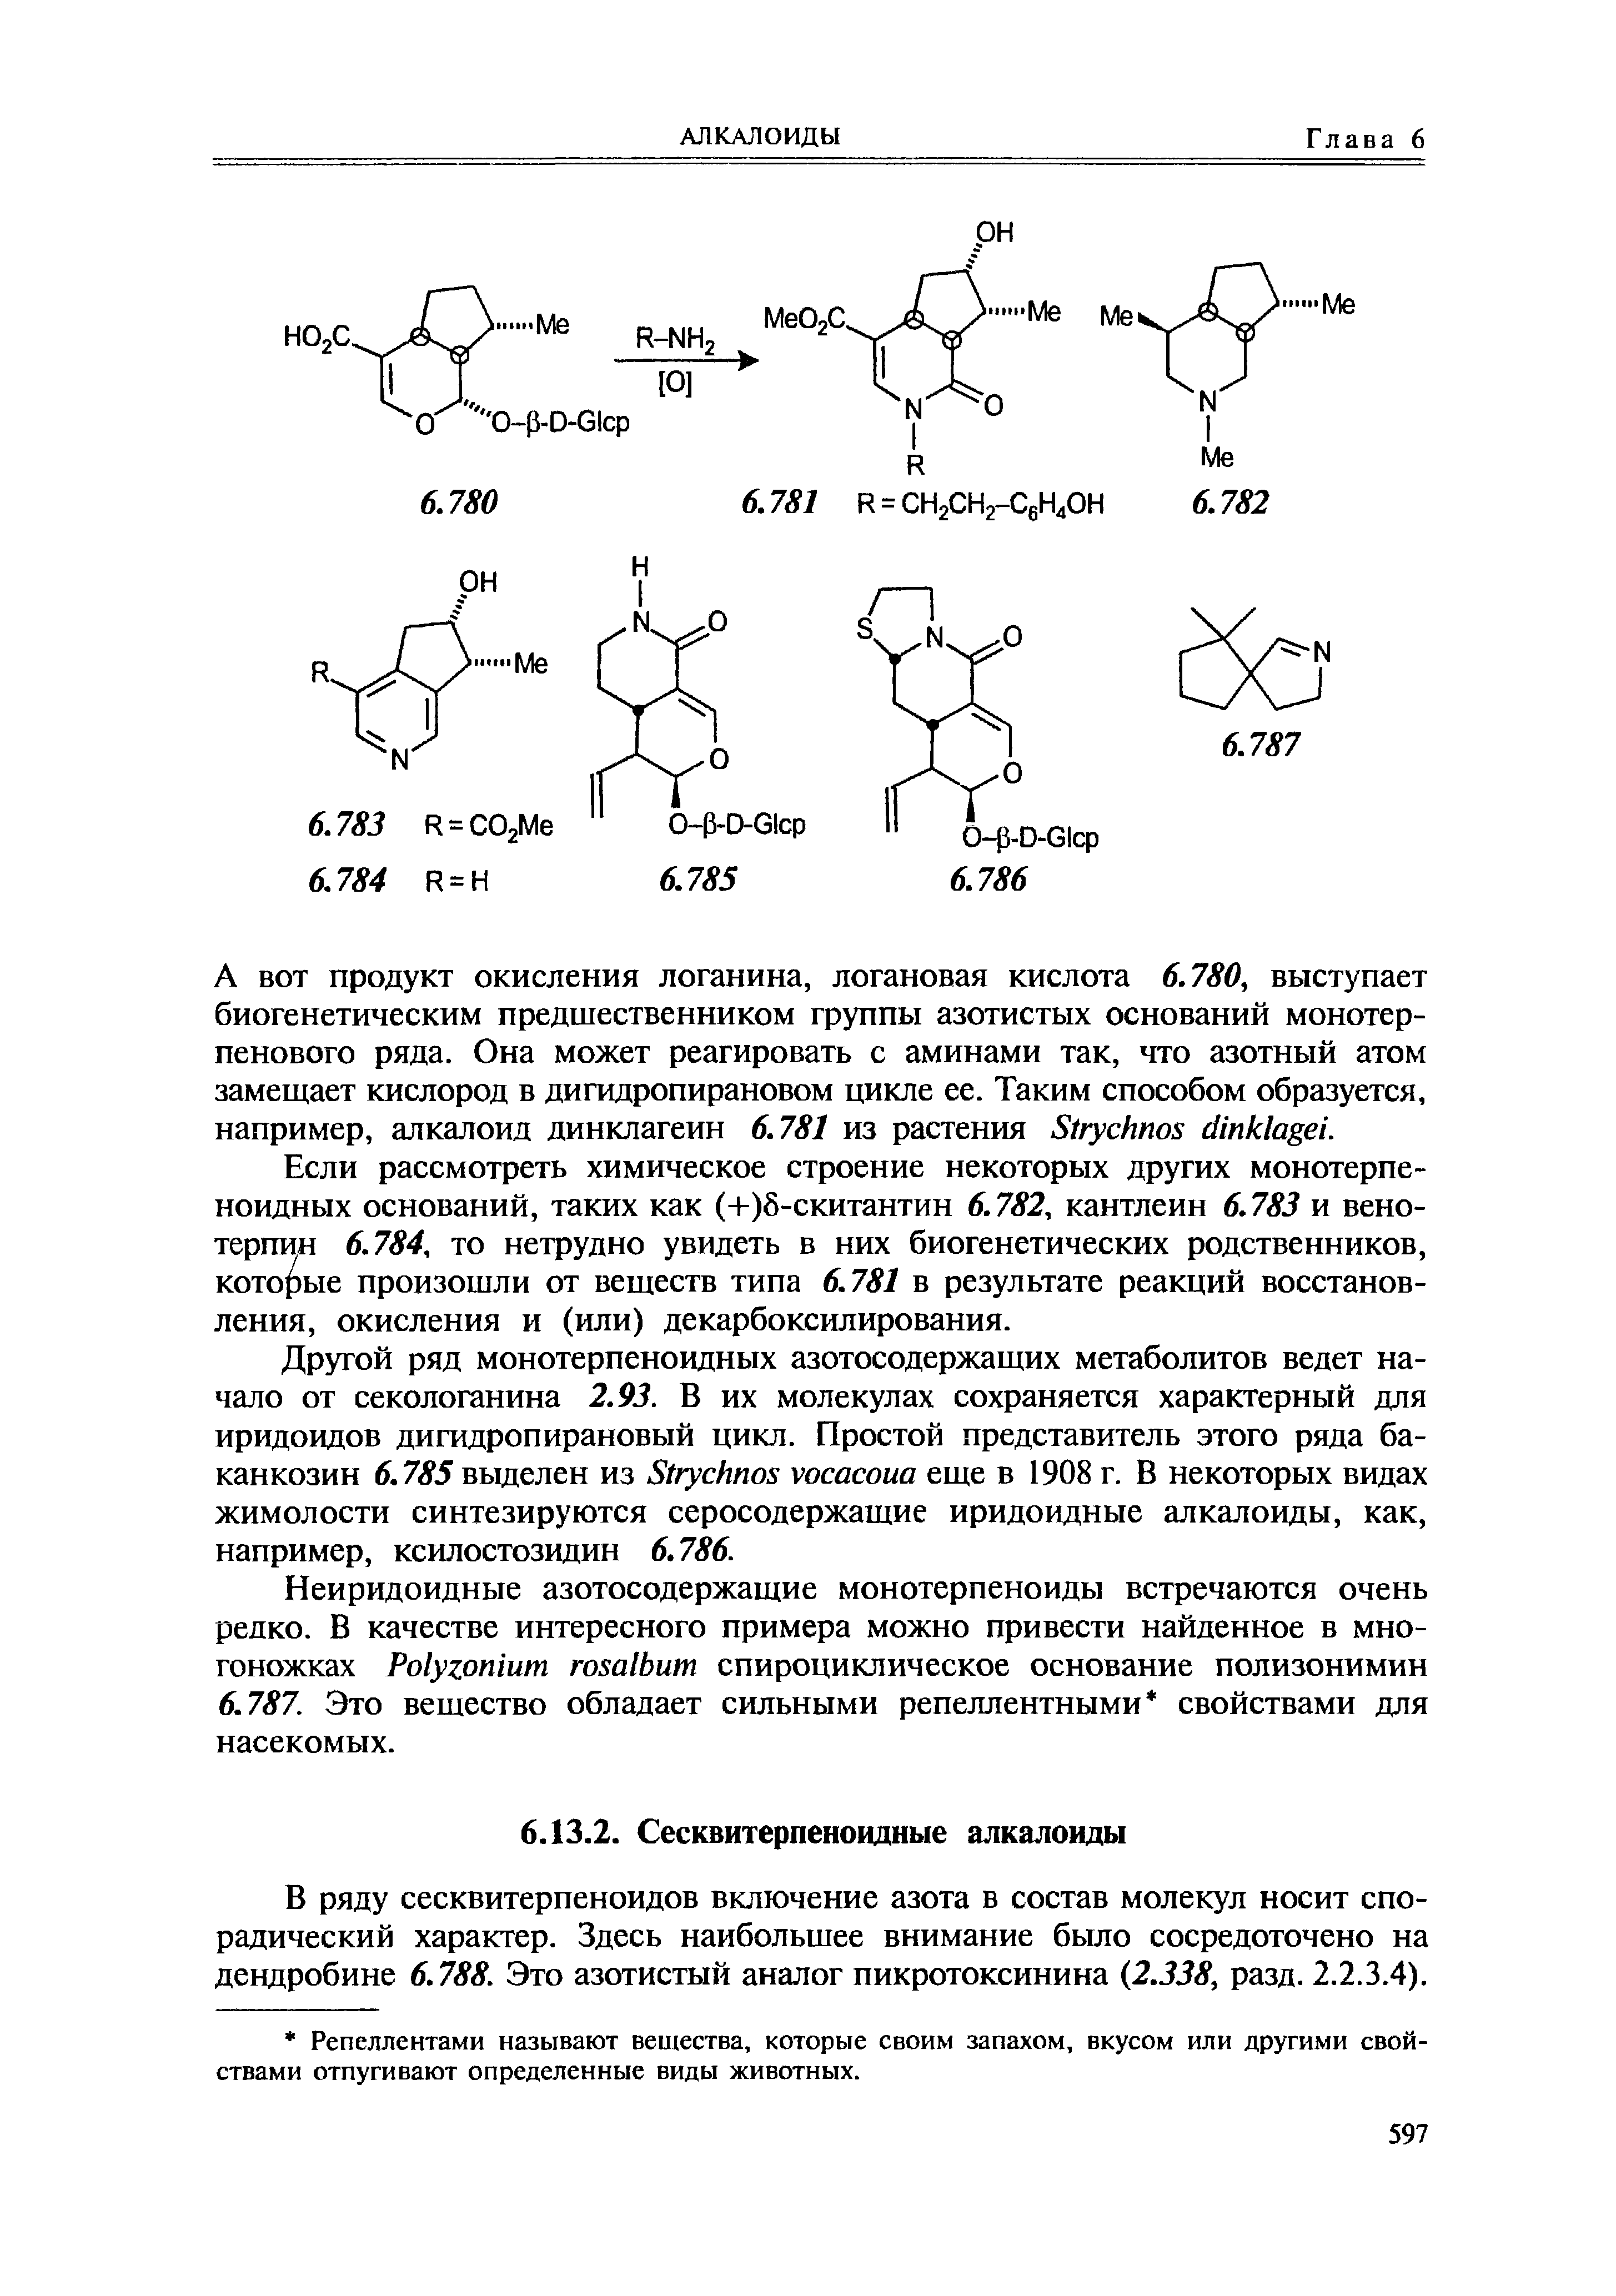 В ряду сесквитерпеноидов включение азота в состав молекул носит спорадический характер. Здесь наибольшее внимание было сосредоточено на дендробине 6.788. Это азотистый аналог пикротоксинина (2.338, разд. 2.2.3.4).